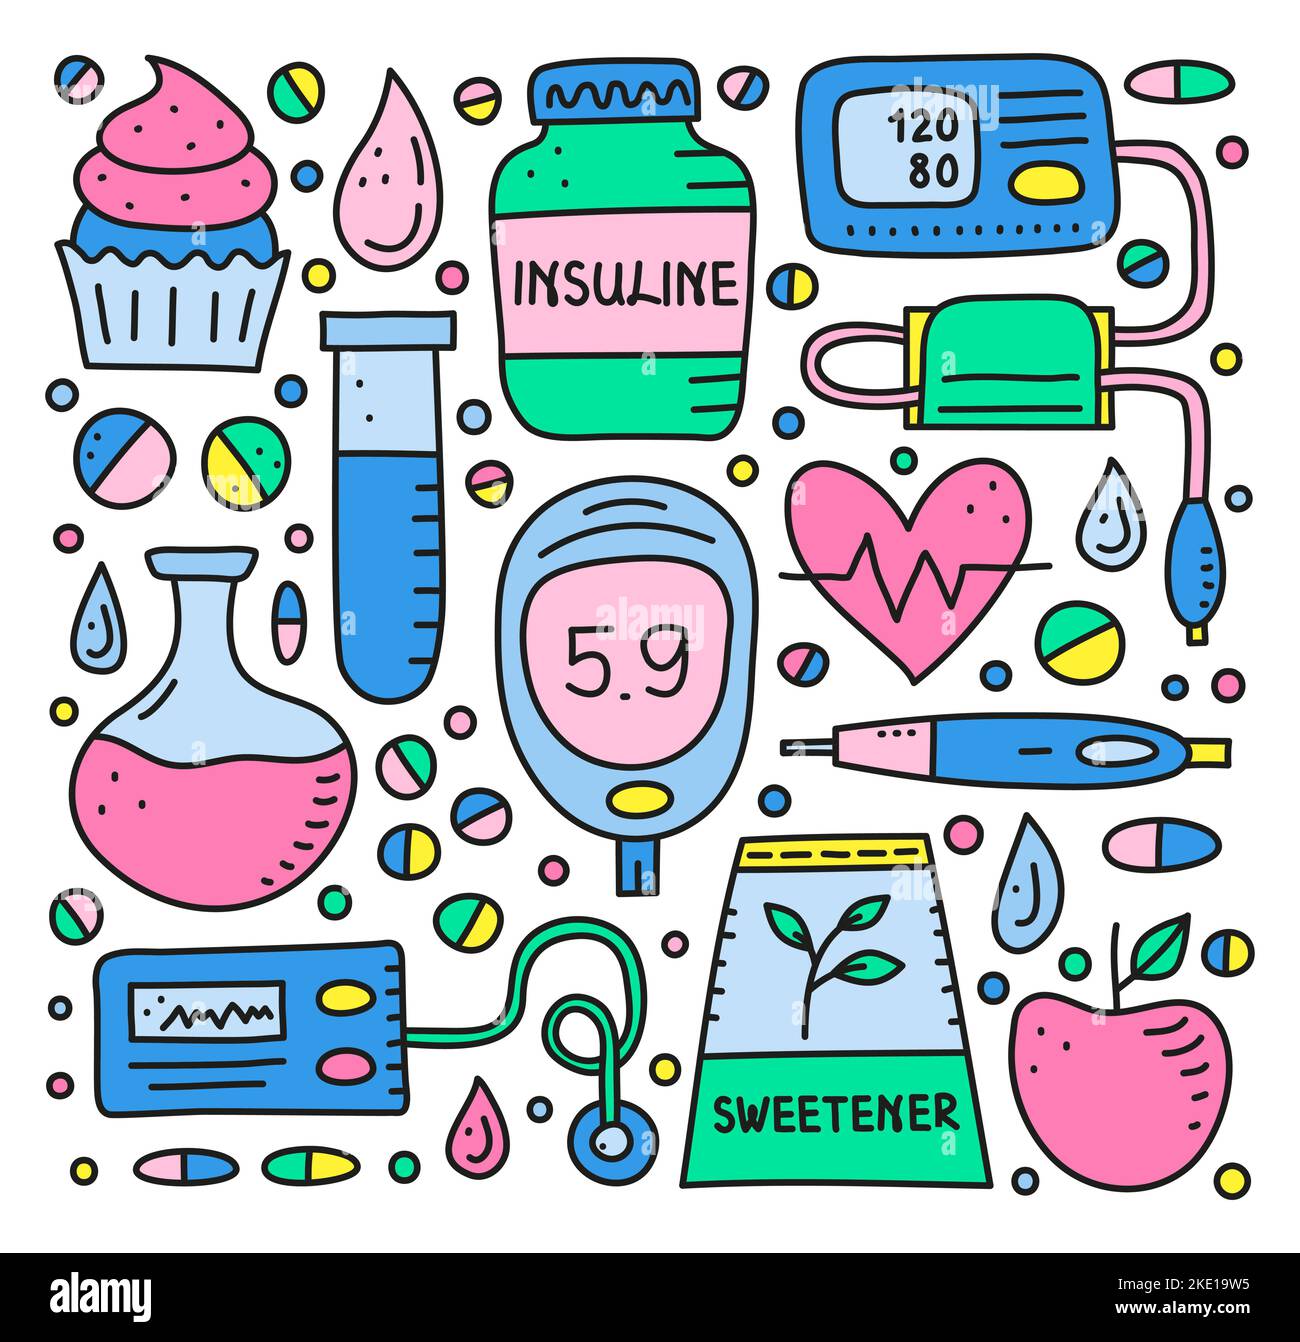 Ensemble d'articles de couleur Doodle pour le diabète, y compris un stylo à insuline, une pompe, un tonomètre, une goutte de sang, glucomètre, cupcake, flacon, édulcorant, coeur, tube à essai isol Illustration de Vecteur